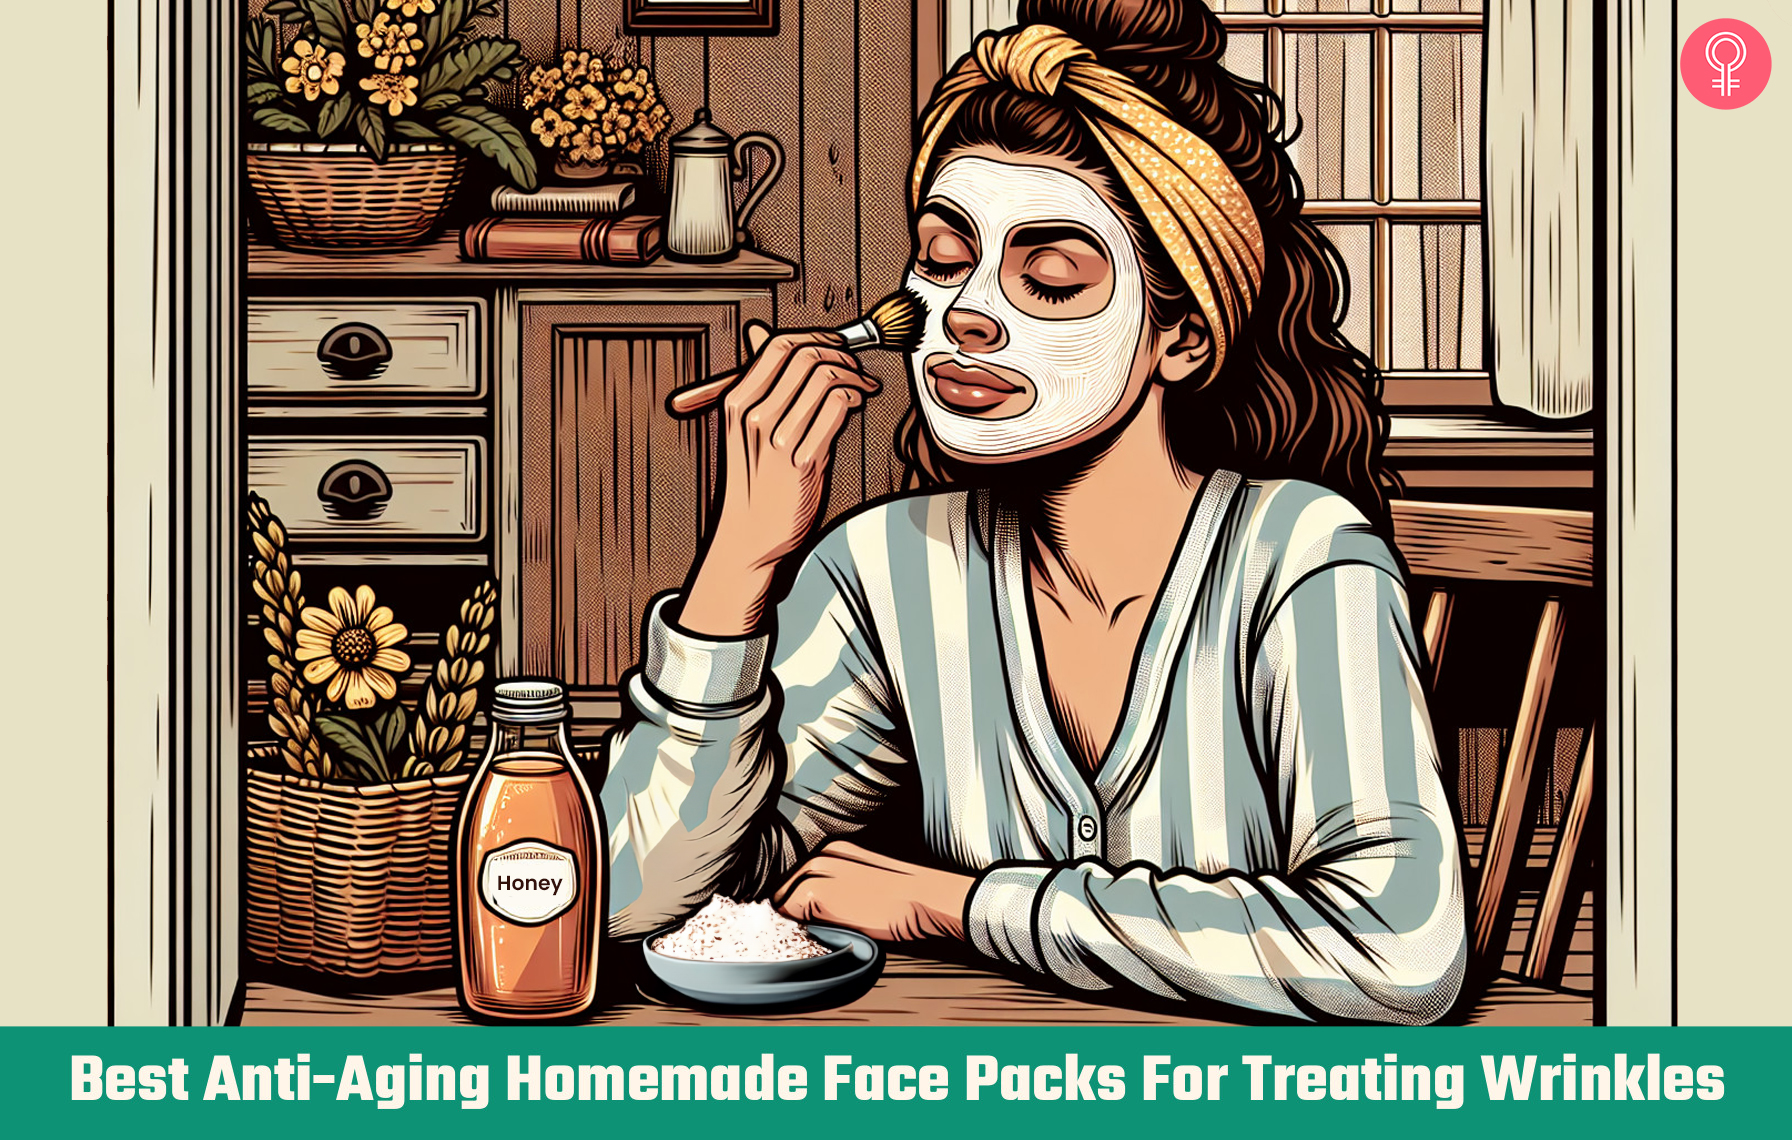 19 Best Anti-Aging Homemade Face Packs For Treating Wrinkles